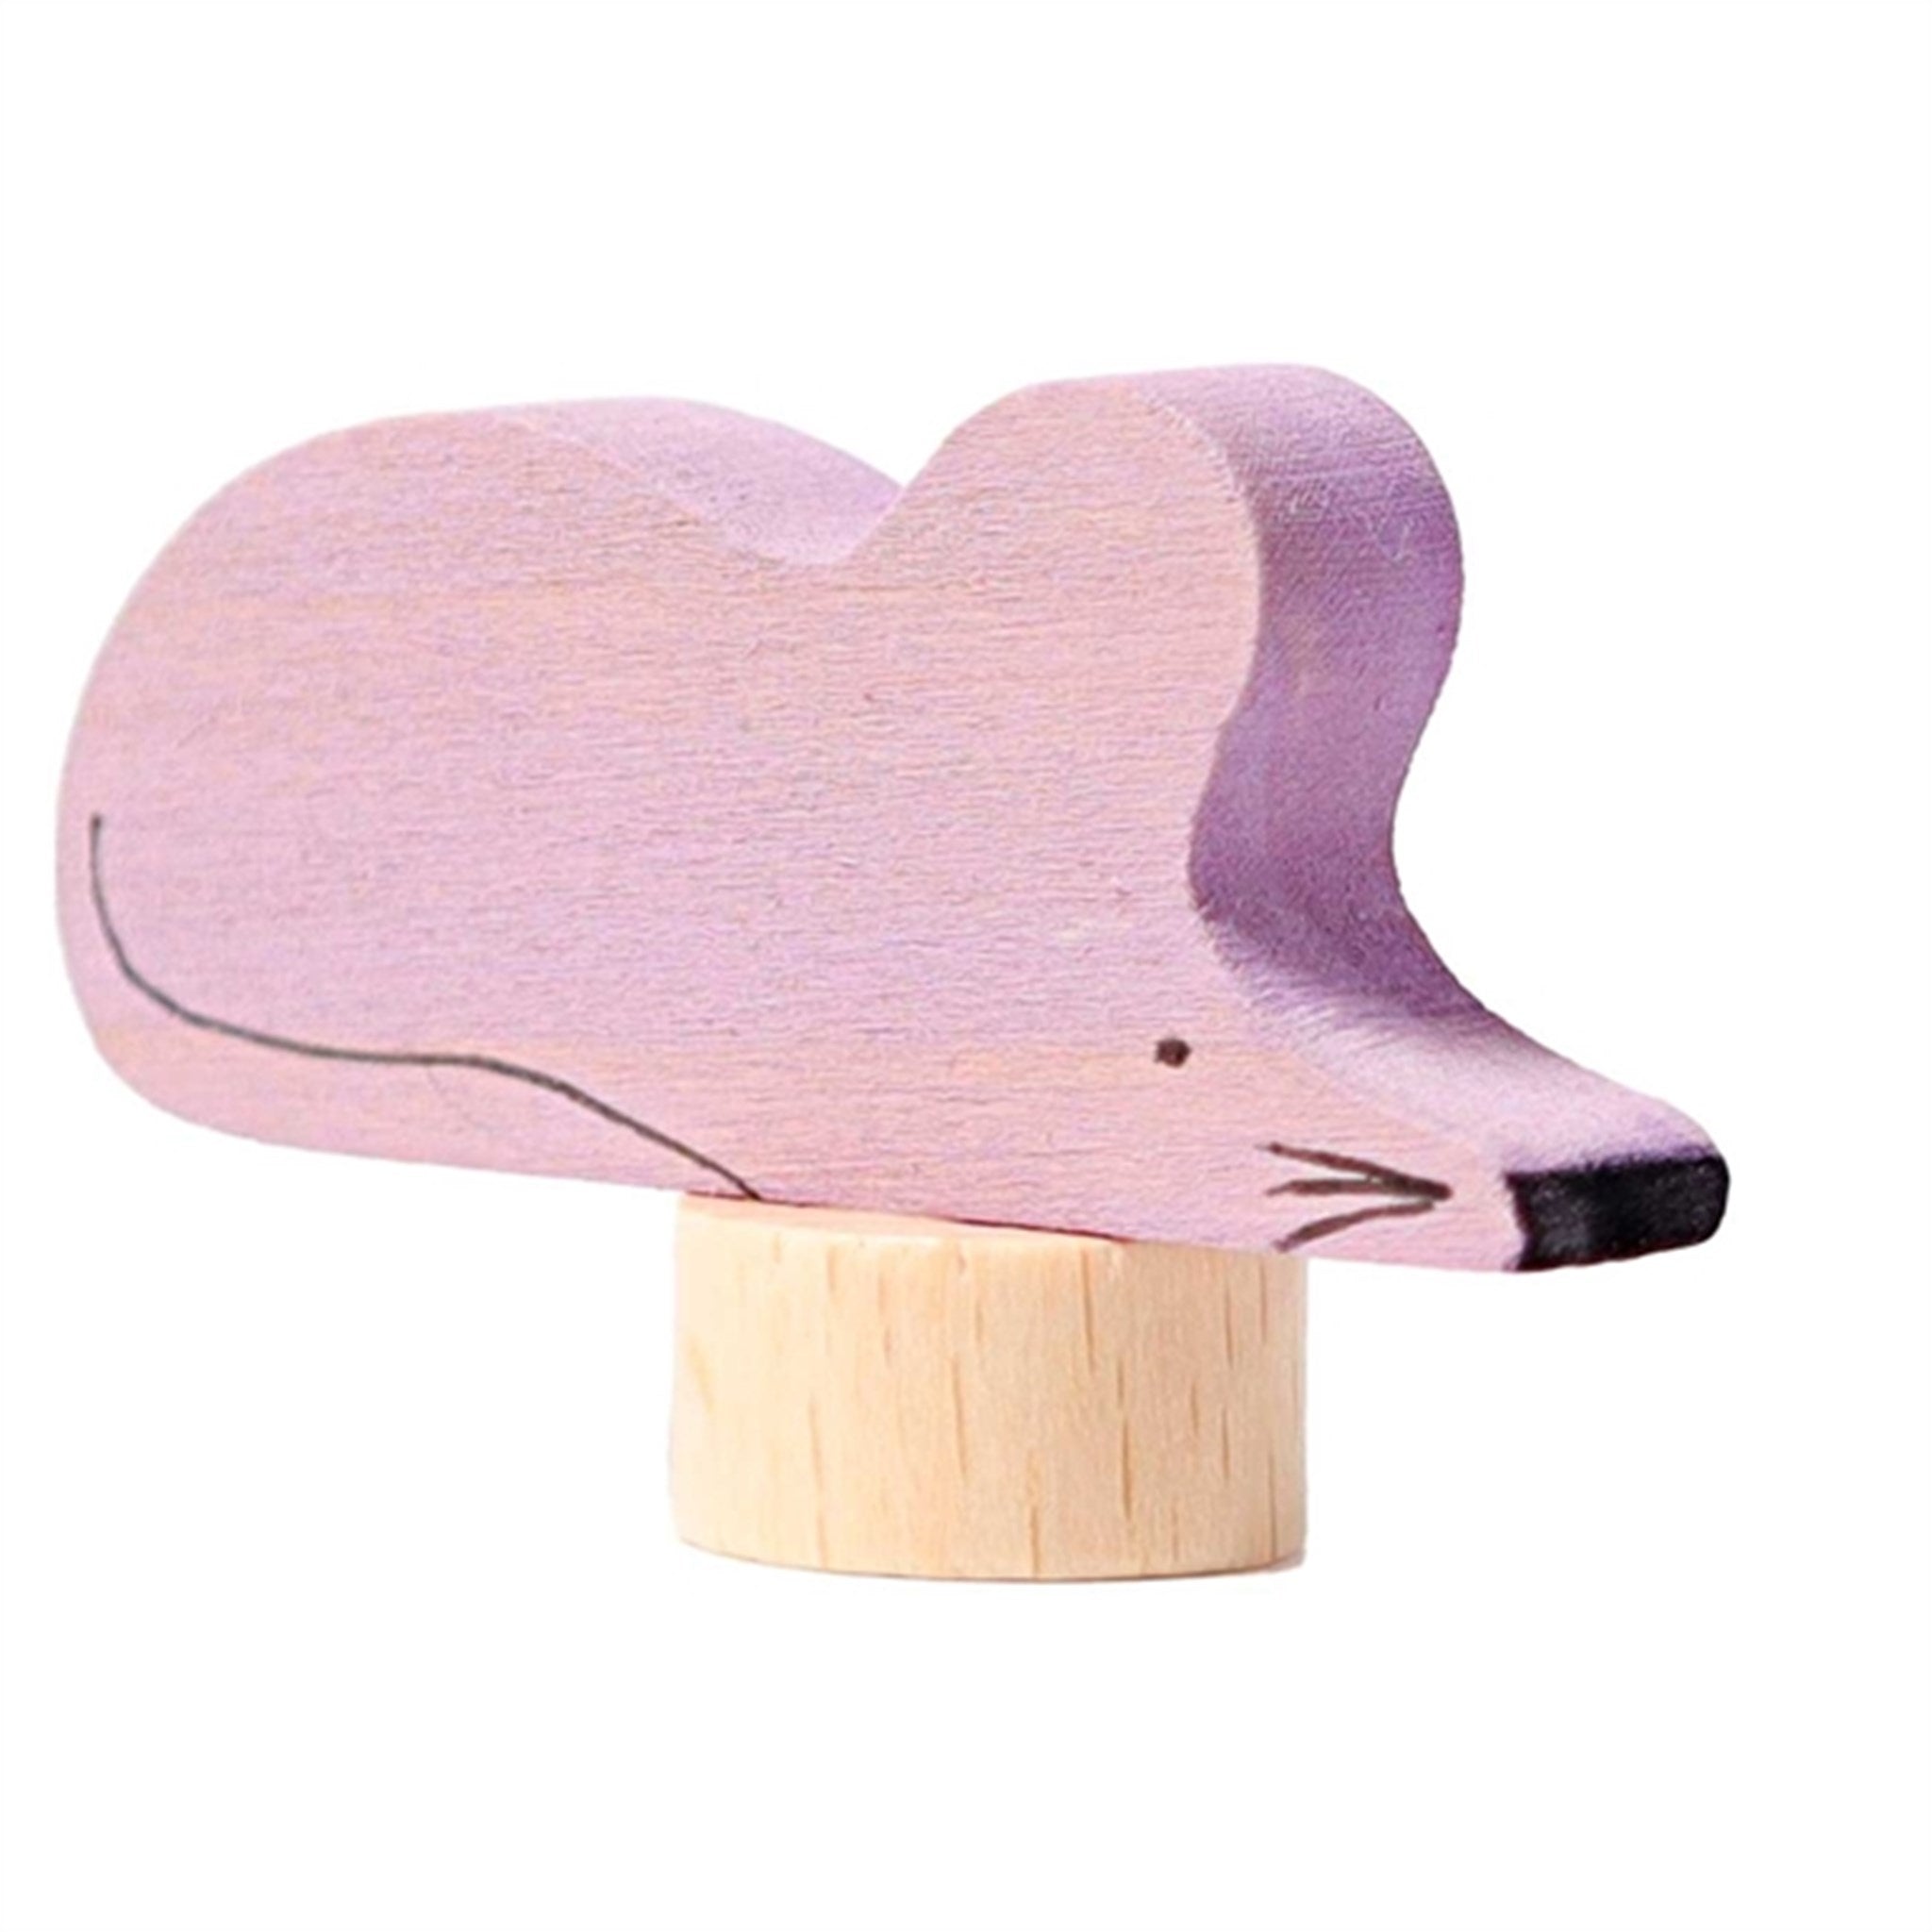 GRIMM´S Decorative Figure Grey Violet Mouse